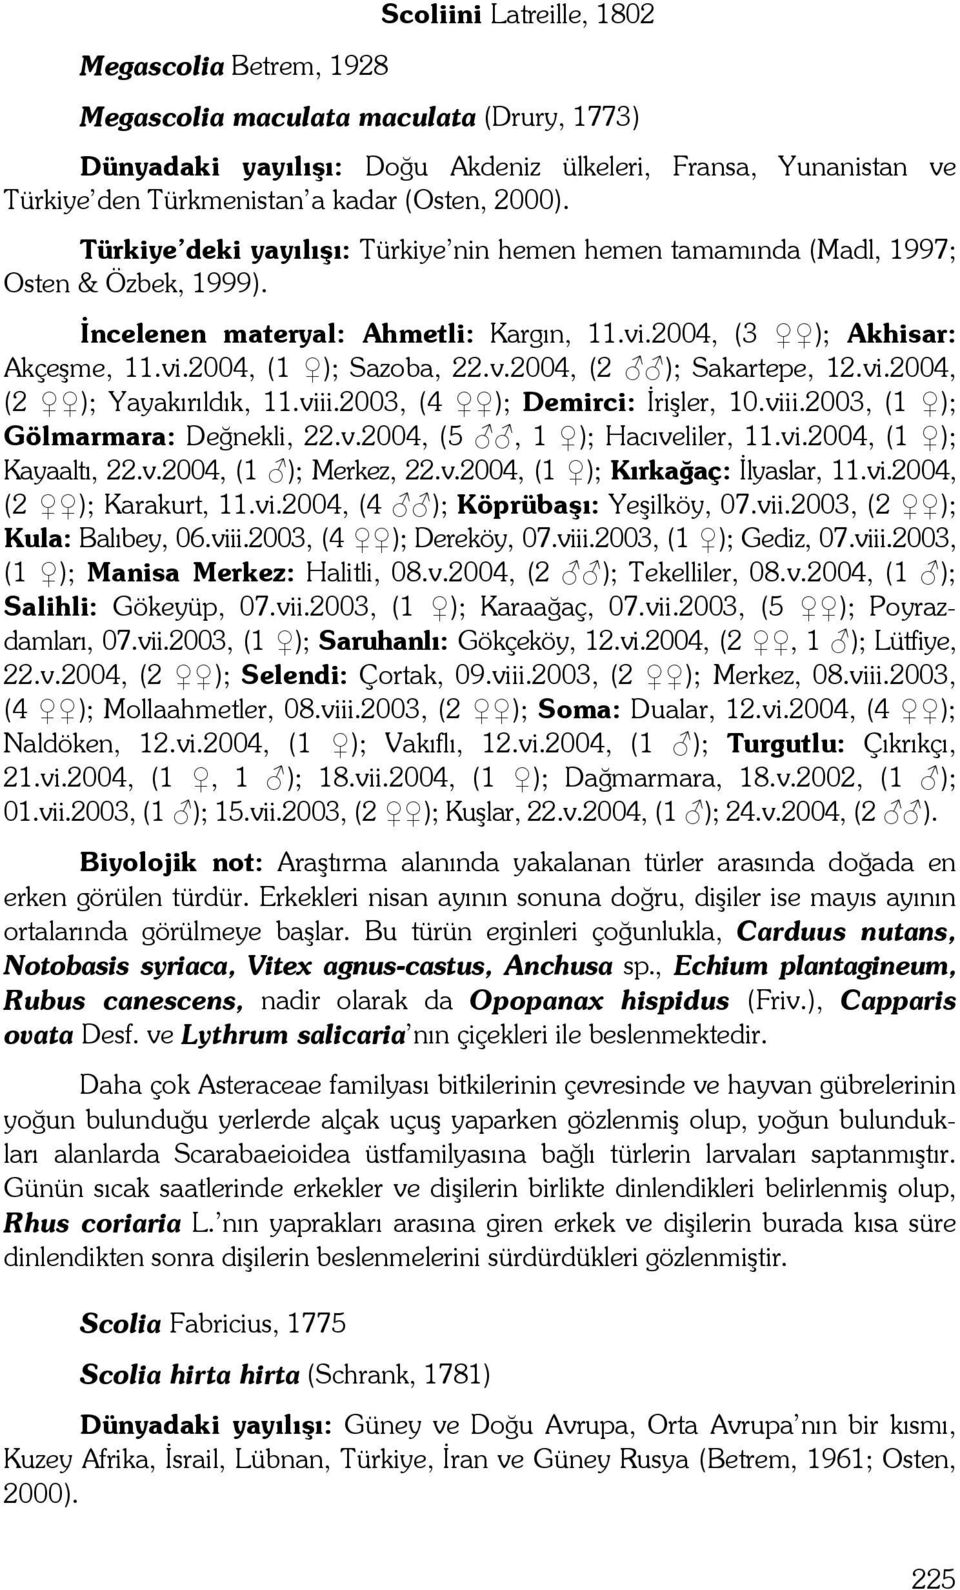 v.2004, (2 ); Sakartepe, 12.vi.2004, (2 ); Yayakırıldık, 11.viii.2003, (4 ); Demirci: İrişler, 10.viii.2003, (1 ); Gölmarmara: Değnekli, 22.v.2004, (5, 1 ); Hacıveliler, 11.vi.2004, (1 ); Kayaaltı, 22.